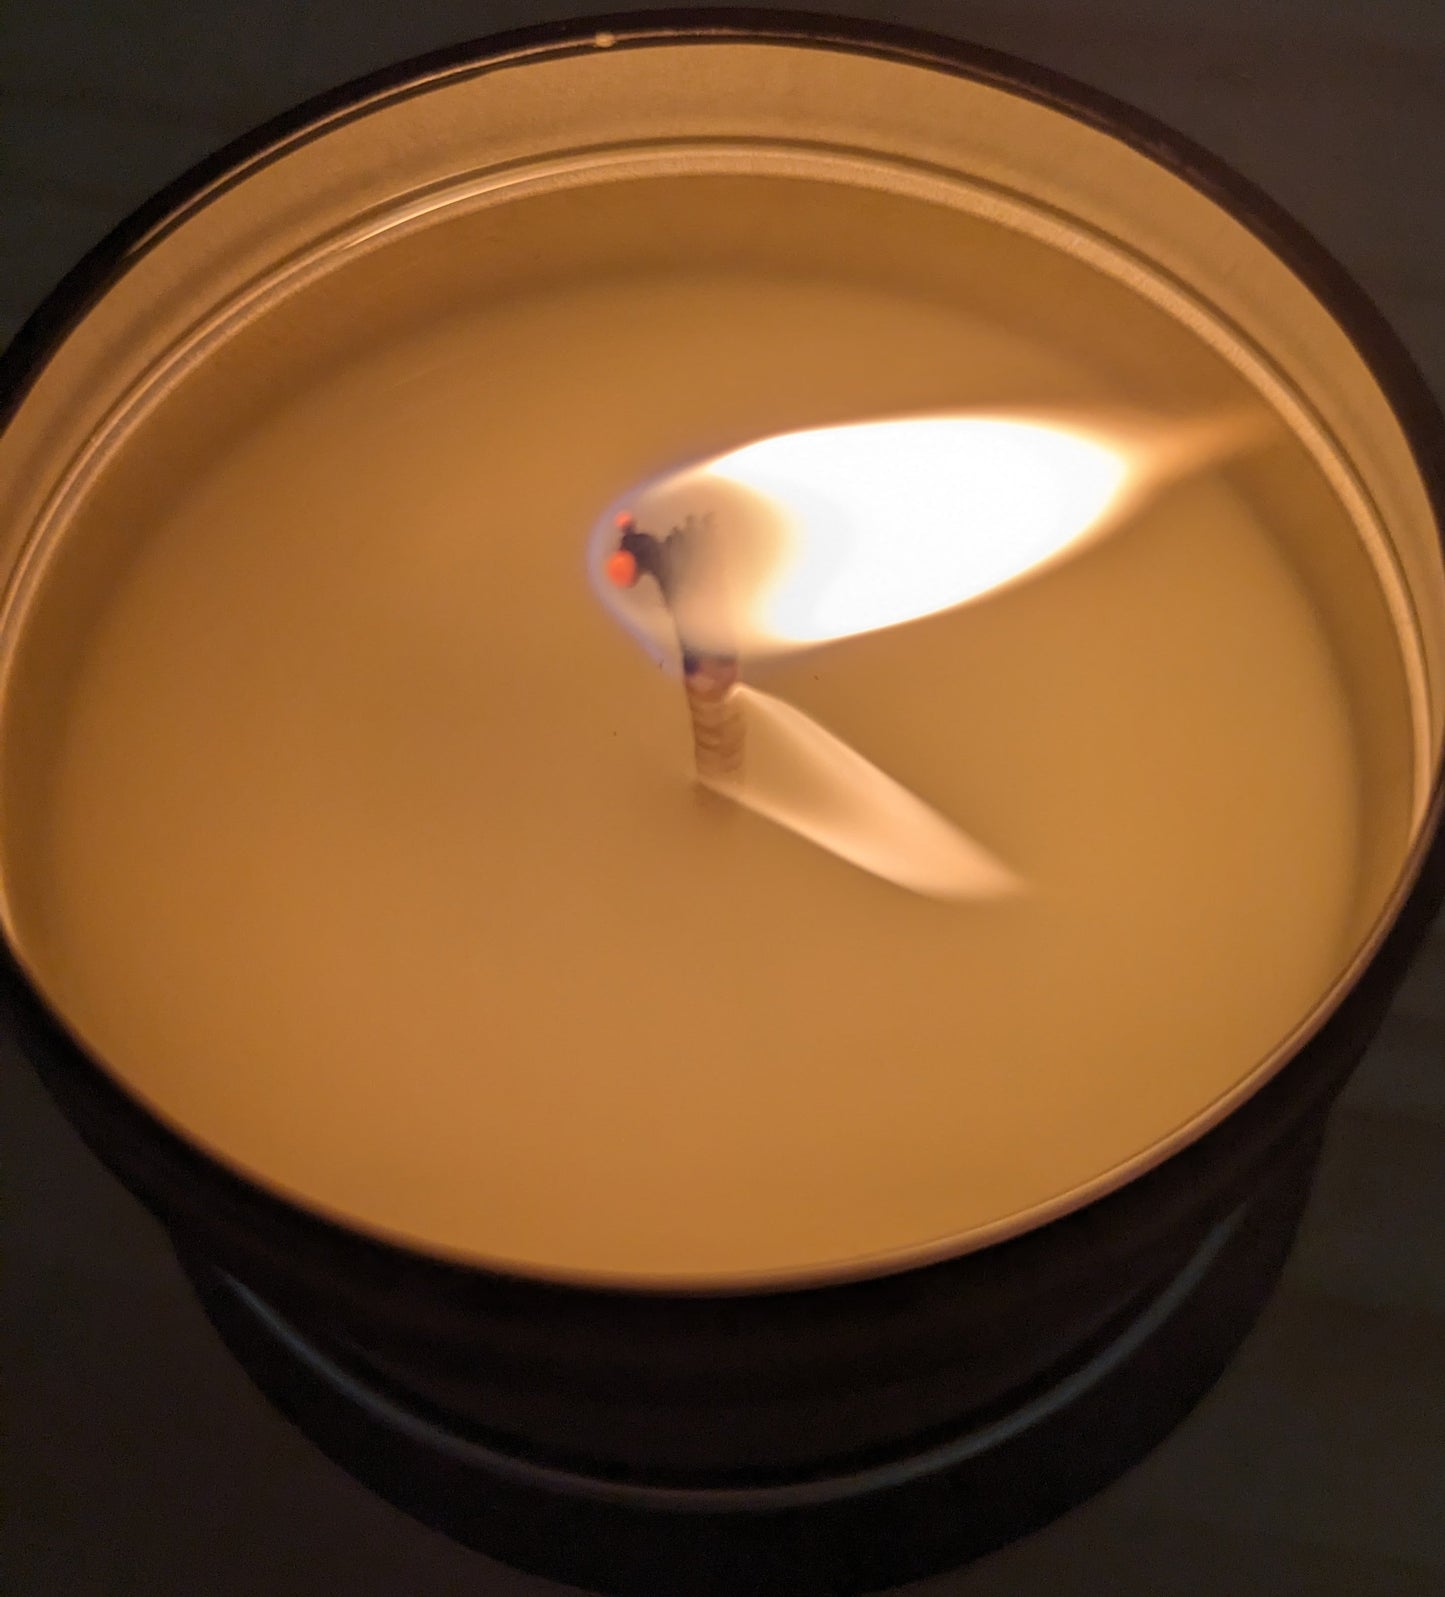 Travel tin candle burning